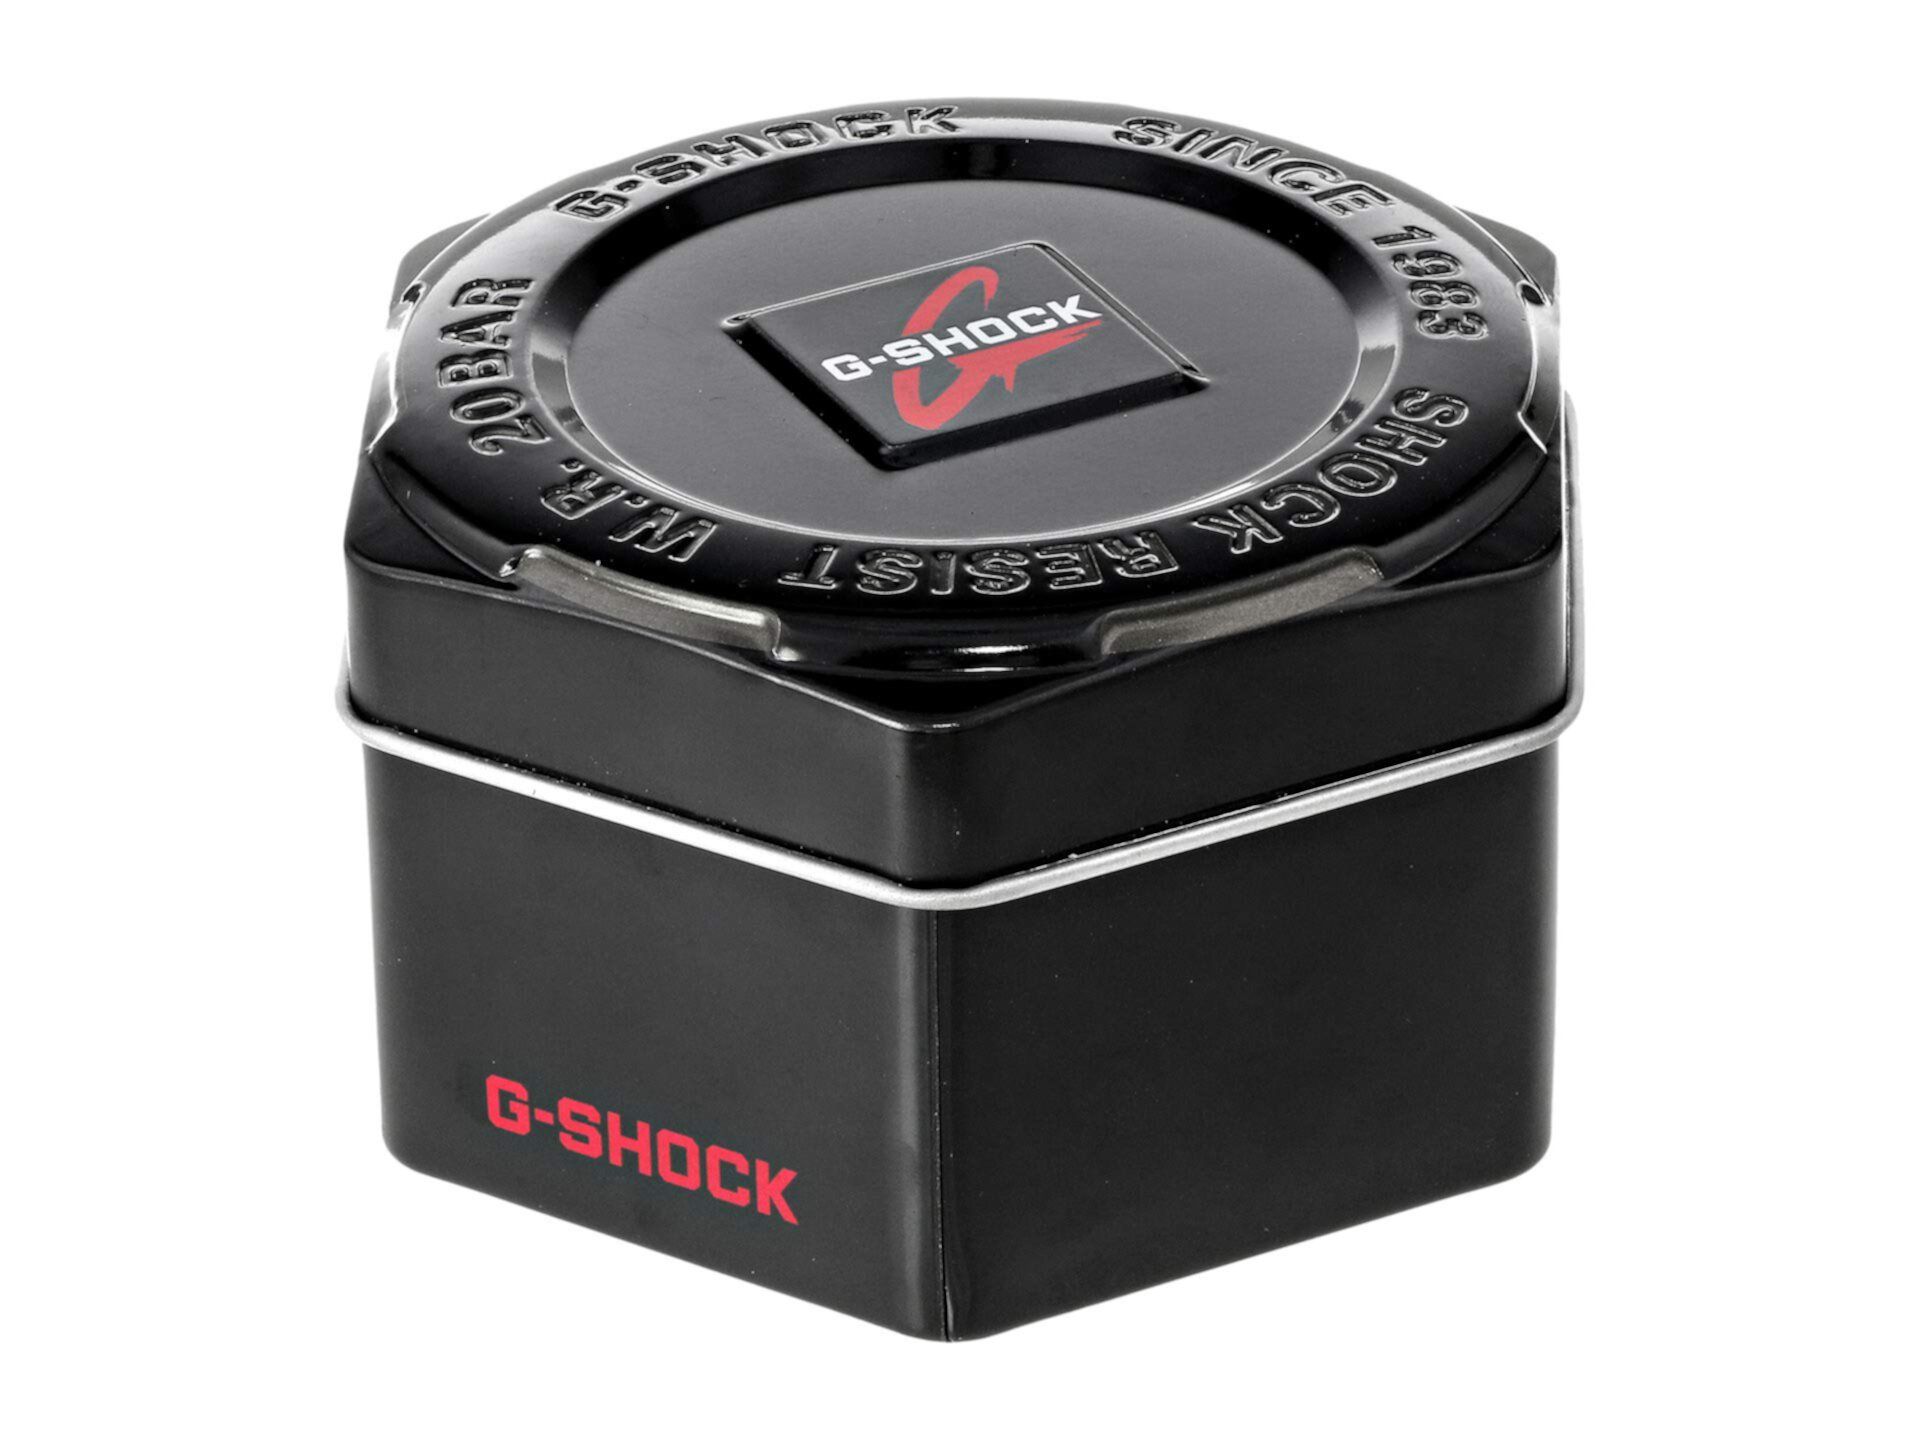 GBX100-1 G-Shock